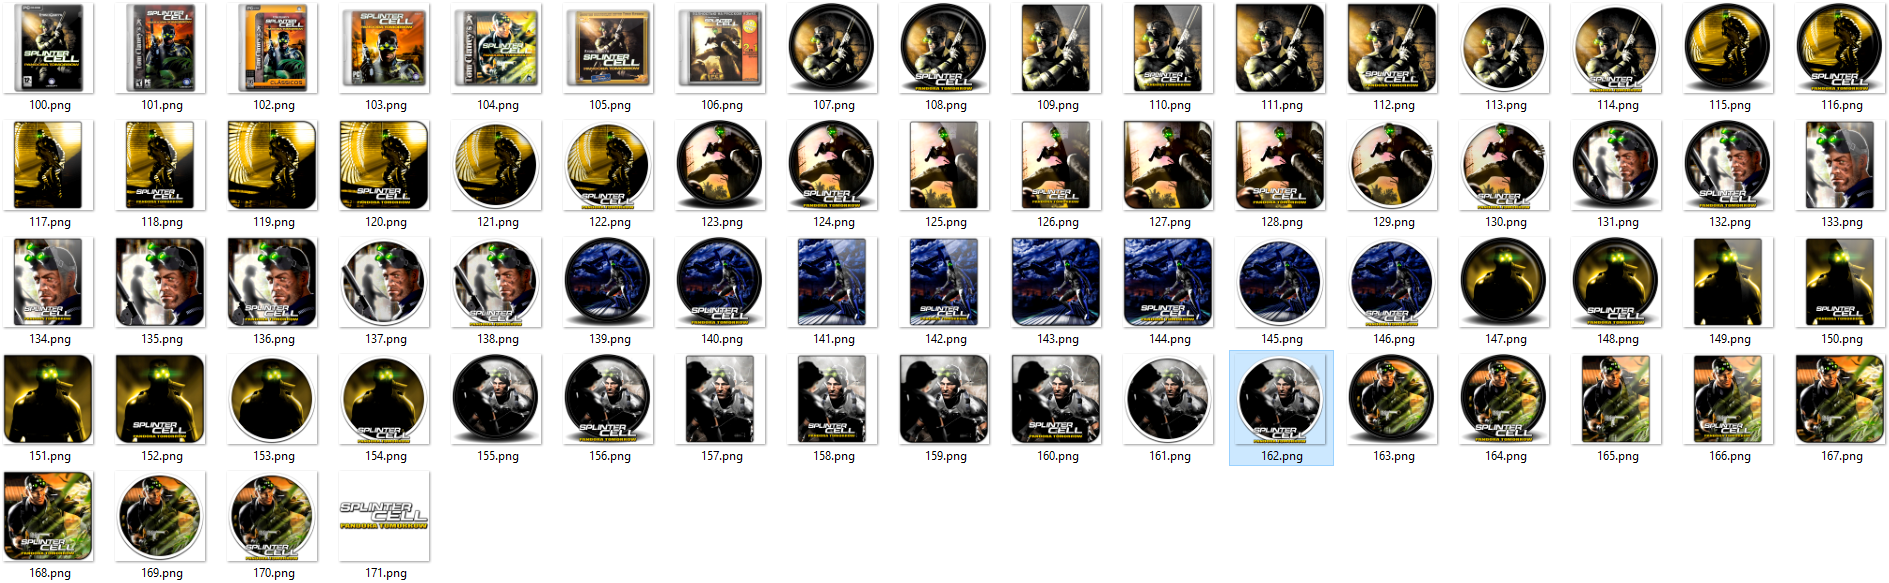 Иконки из набора к игре Splinter Cell Pandora Tomorrow